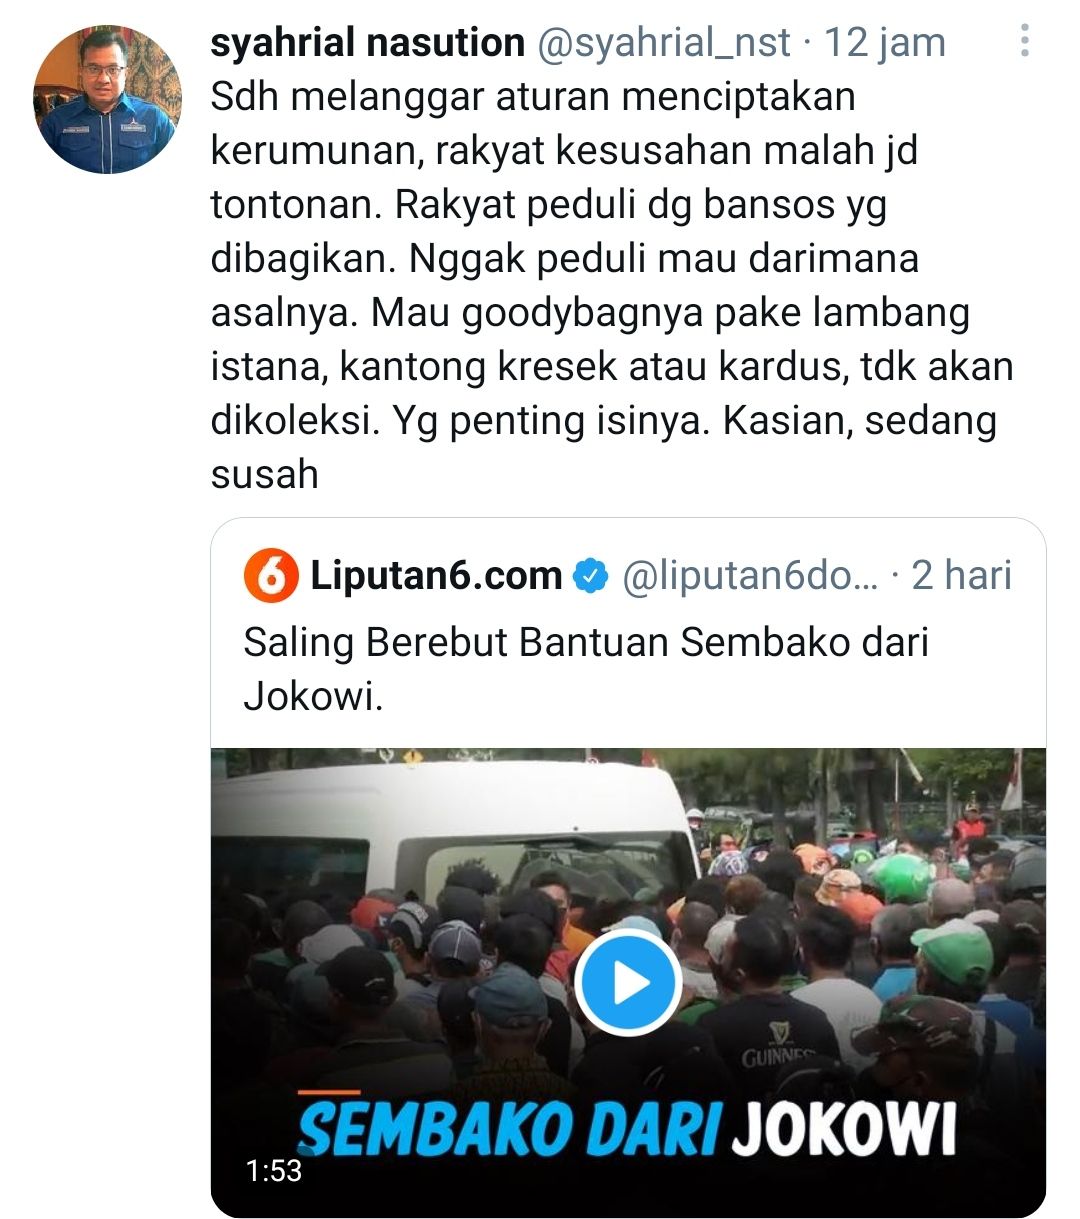 Tangakapan layar cuitan Syahrial Nasution soal pembagian sembako dari Jokowi yang picu kerumunan./